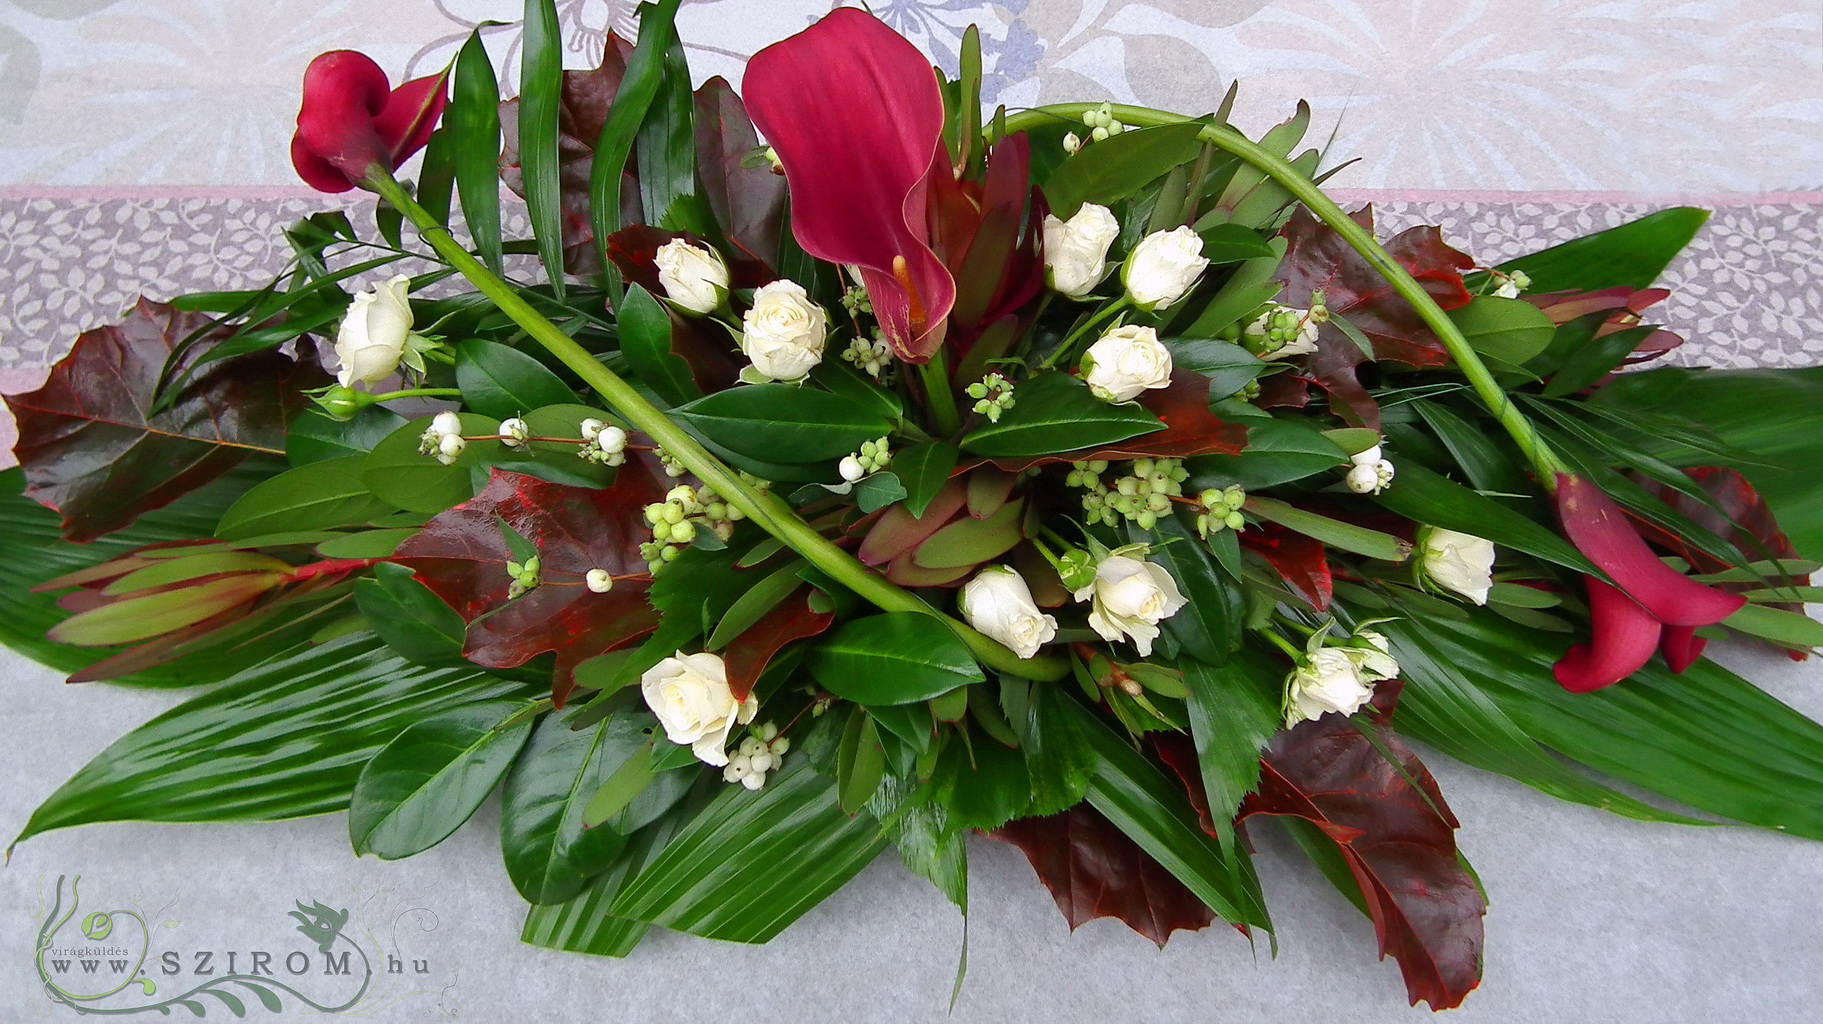 Főasztaldísz (bokros rózsa, kála, leukadendron, bordó ), esküvő